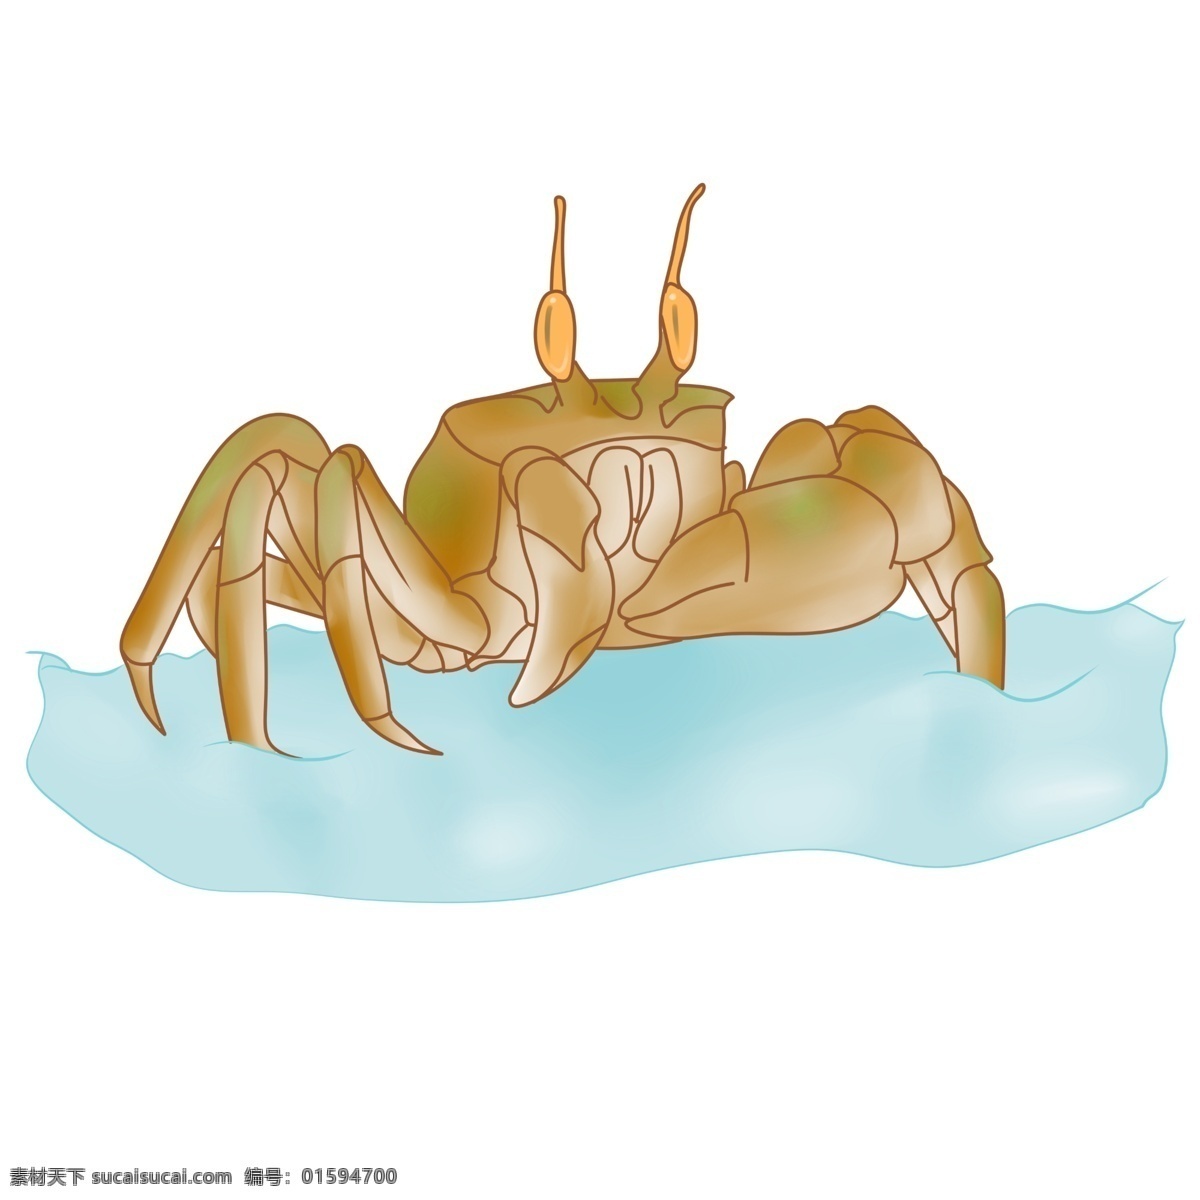 手绘 海鲜 螃蟹 插画 手绘螃蟹插画 可爱的螃蟹 卡通螃蟹插画 海鲜螃蟹 海洋生物 卡通海鲜插画